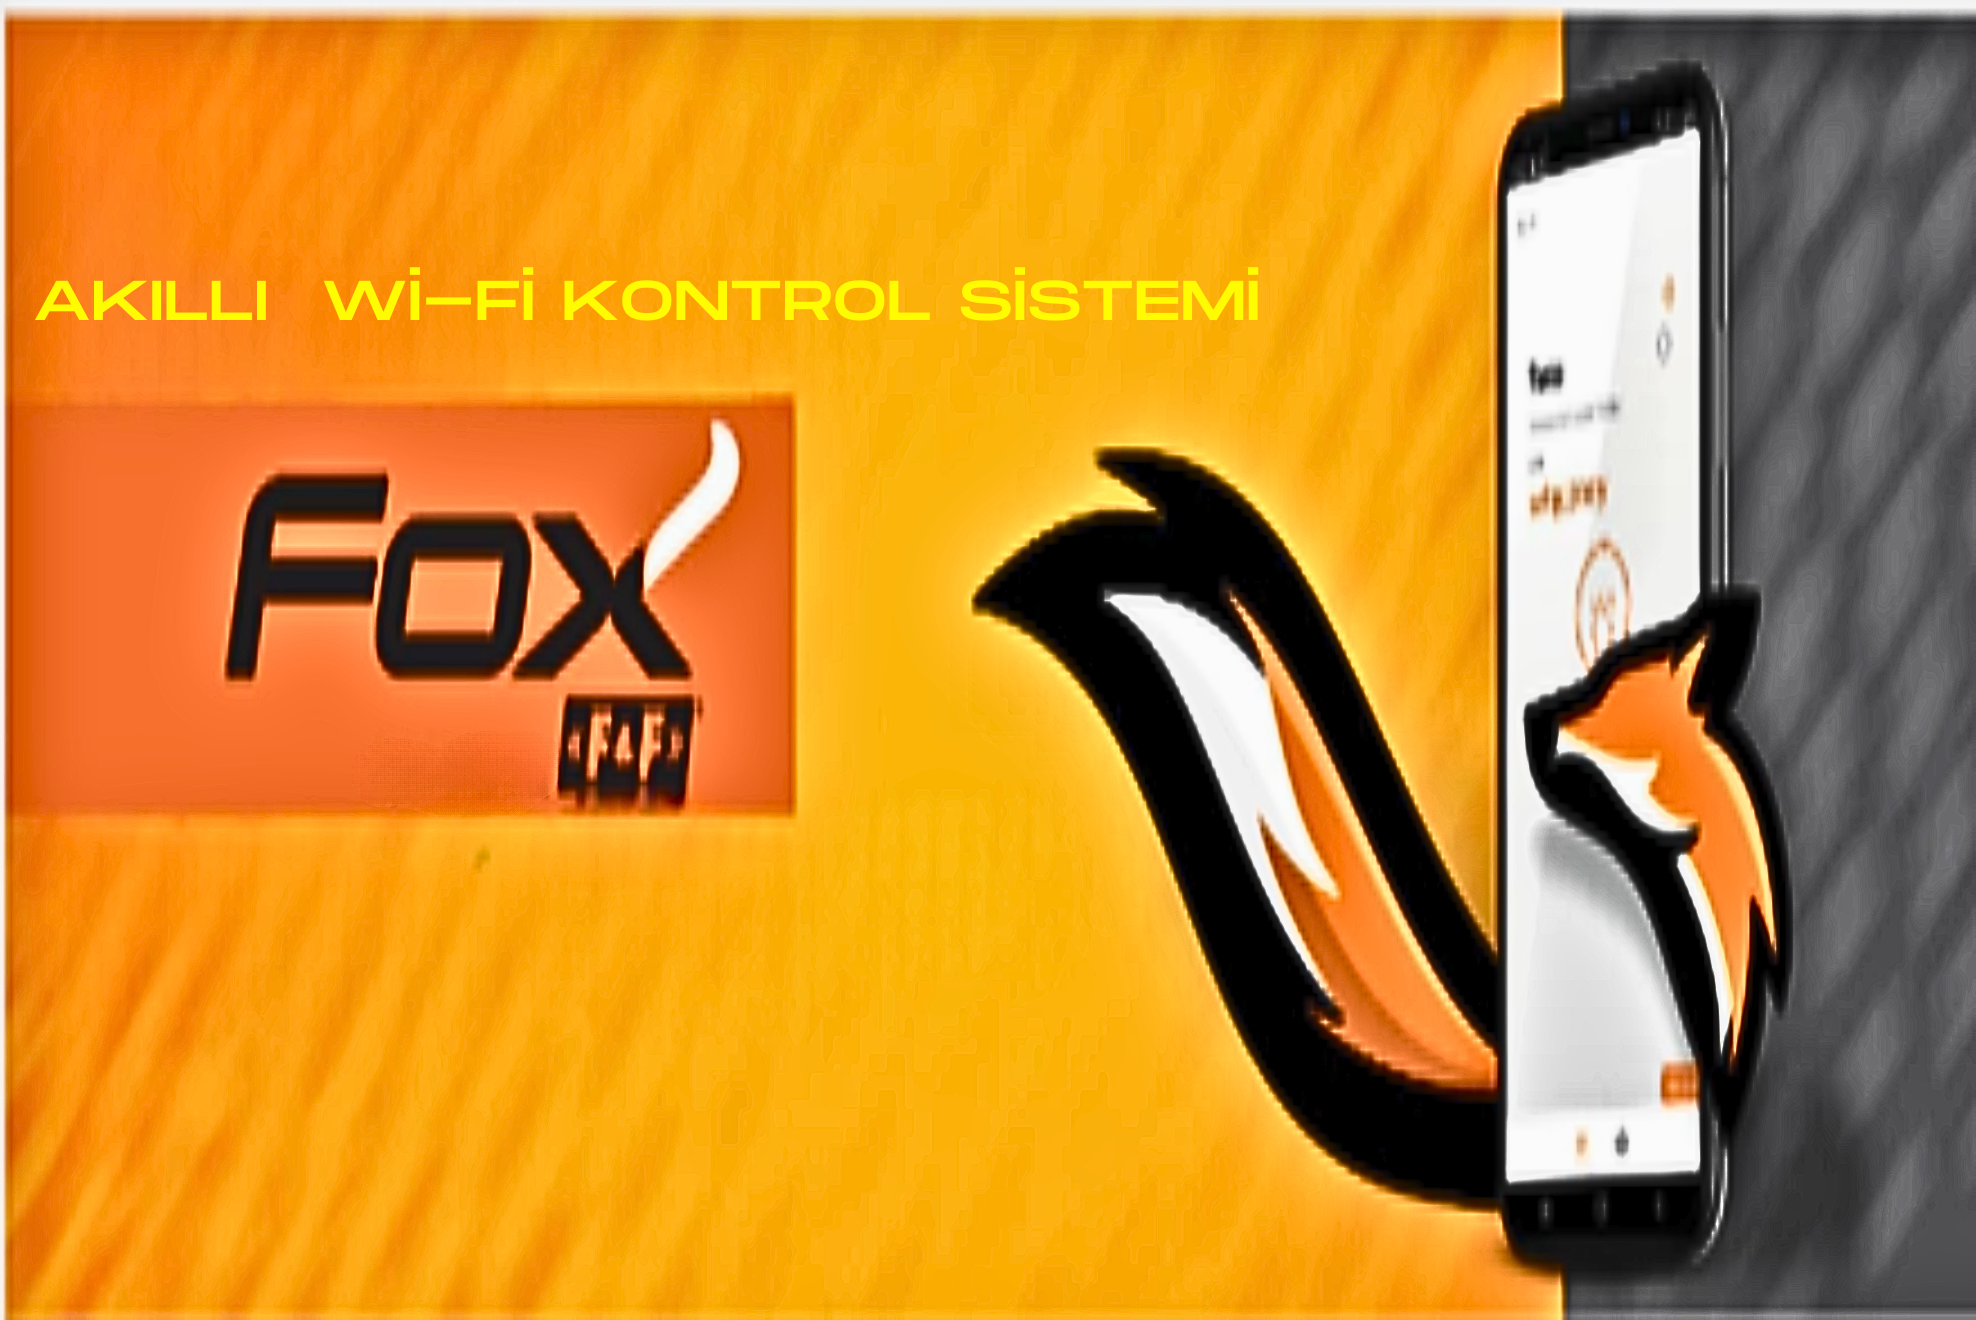 Wi-Fi ağı kullanan akıllı bir kablosuz kontrol sistemidir